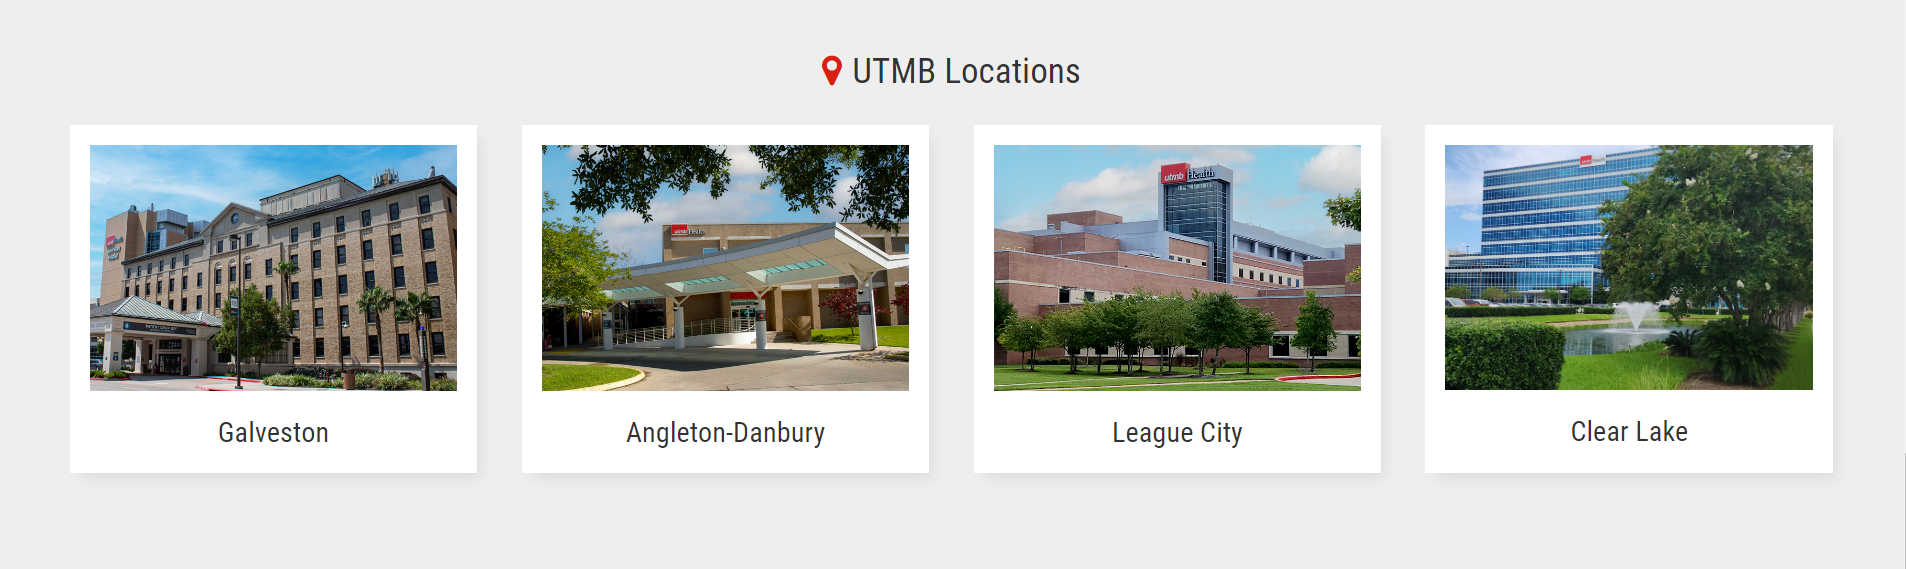 different campus locations